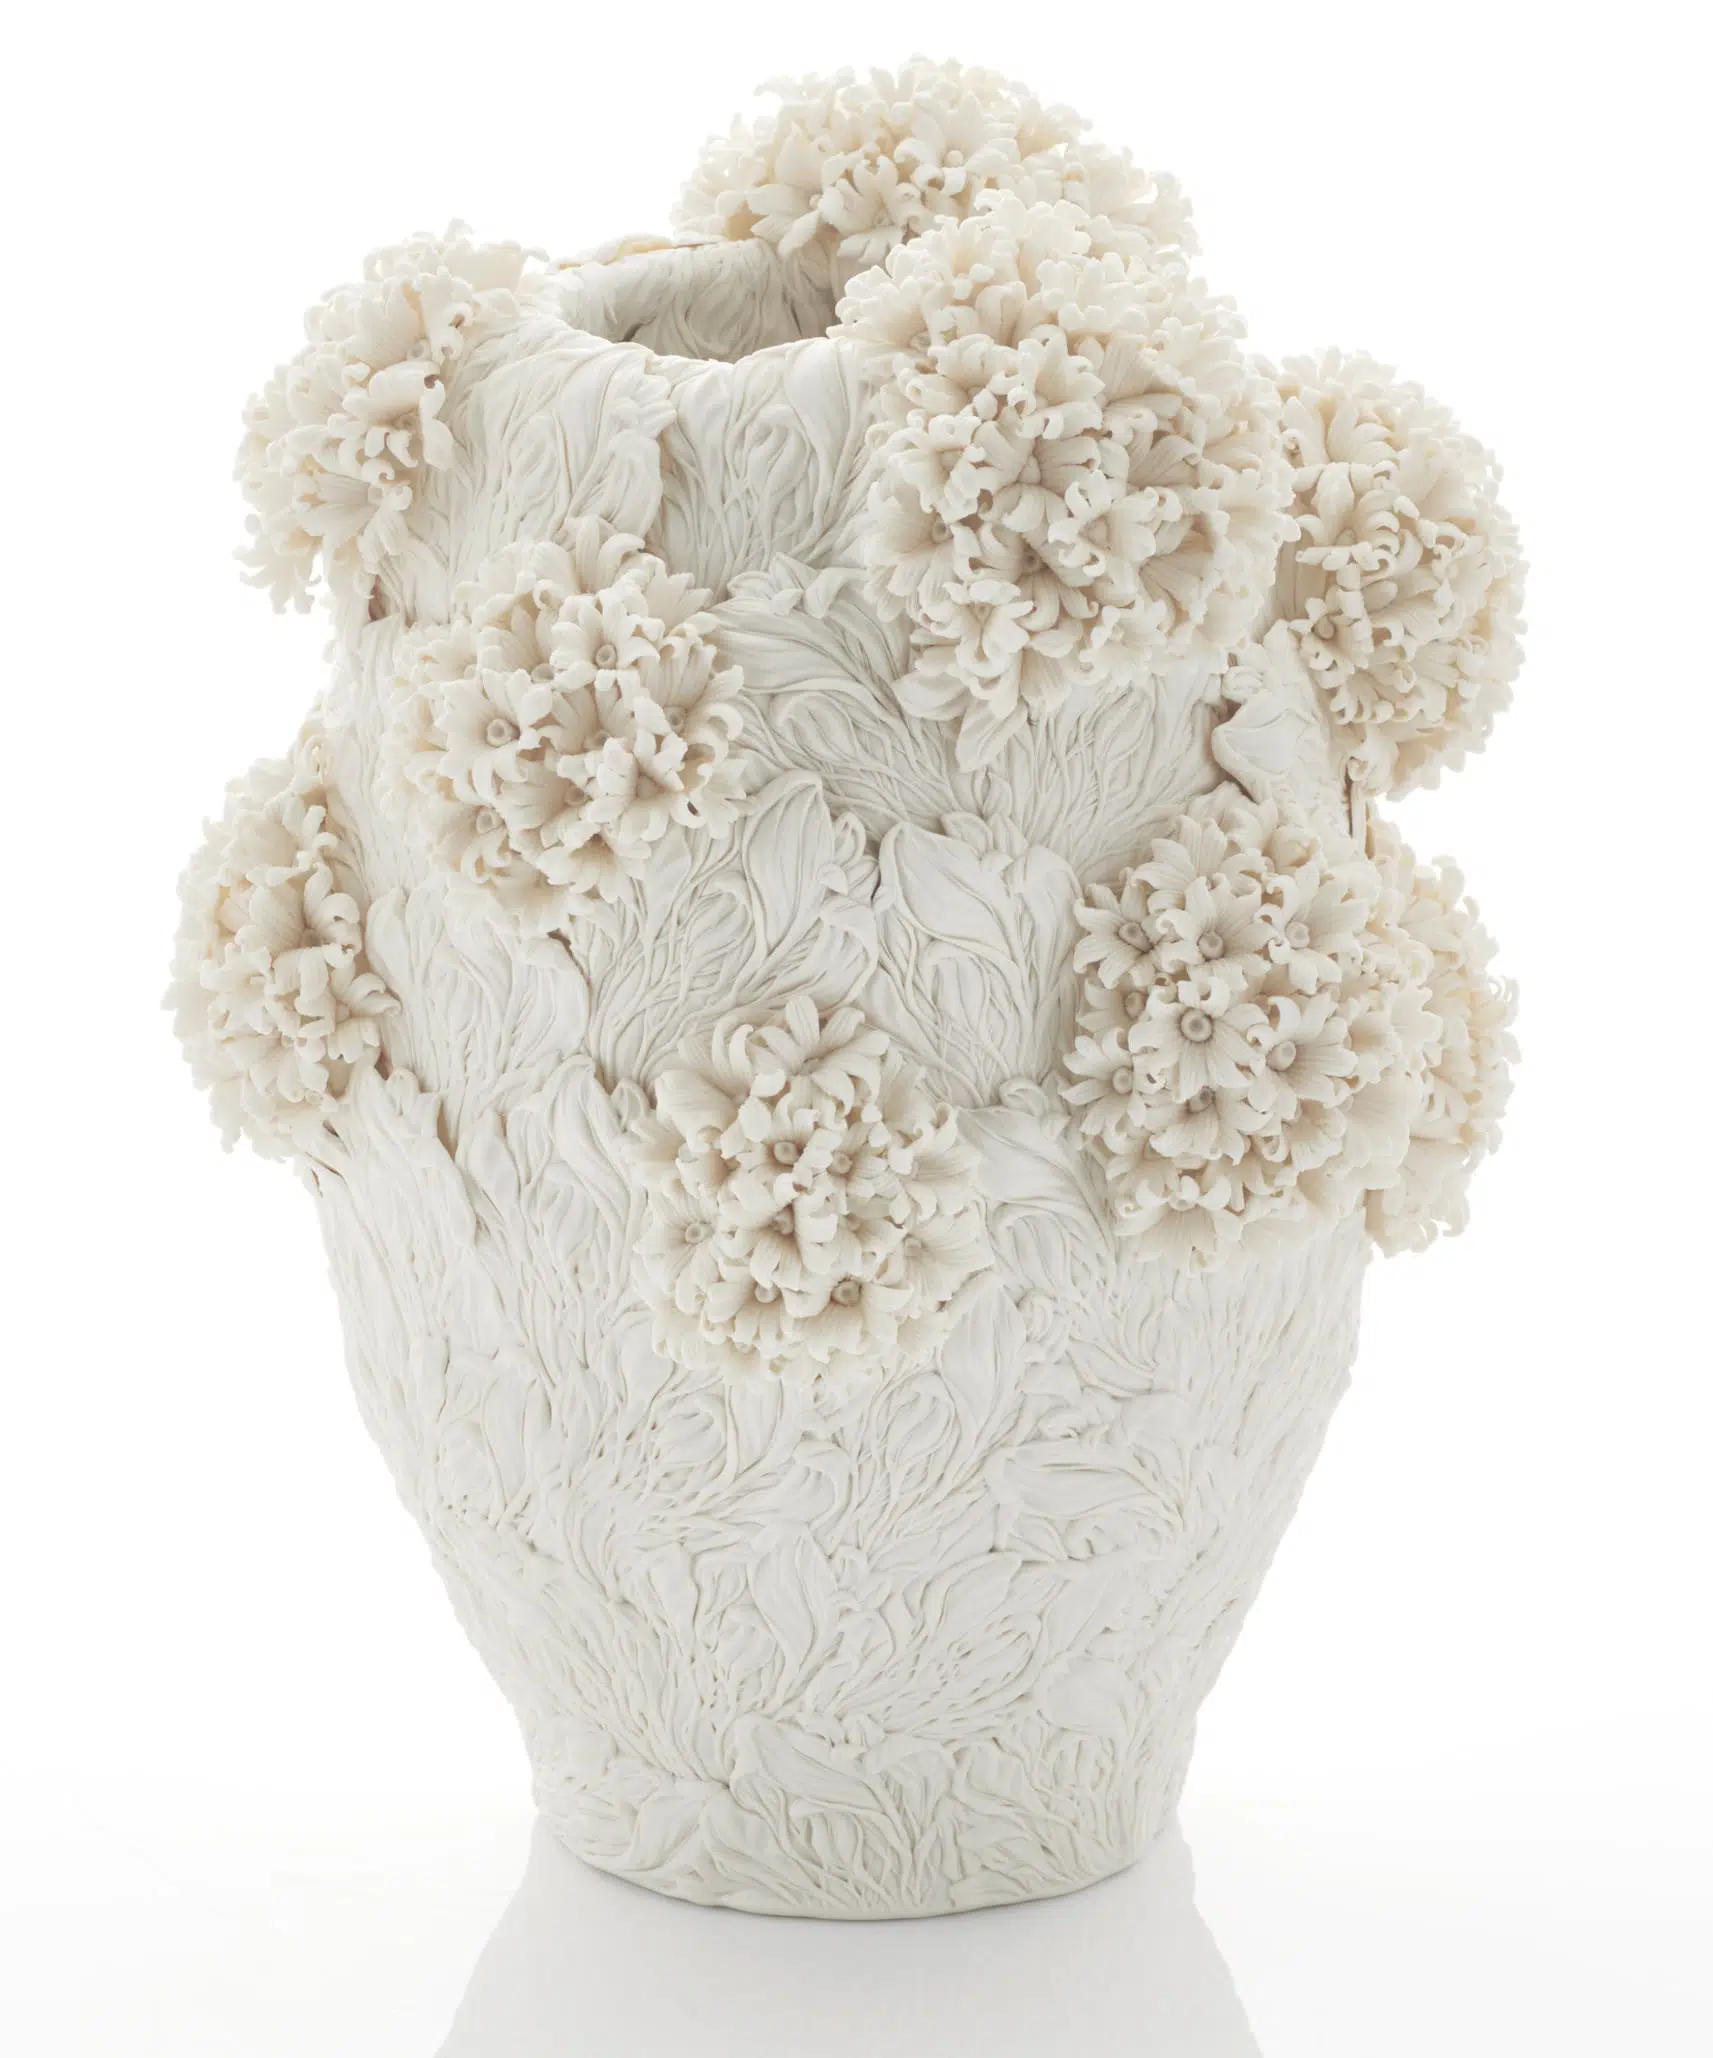 vasija de porcelana detallada cpn motivos botanicos en monocromia por hitomi hosono